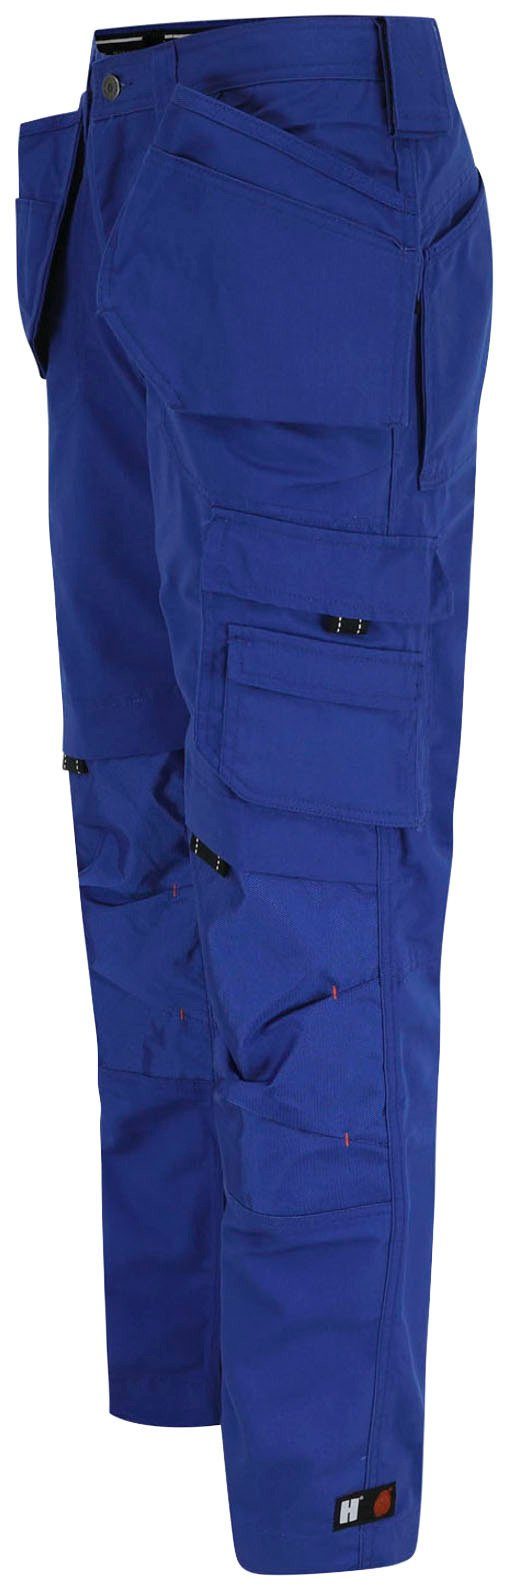 (inkl. Taschen Arbeitshose Hose Nageltaschen) Herock blau Wasserabweisend, robust, 11 Dagan